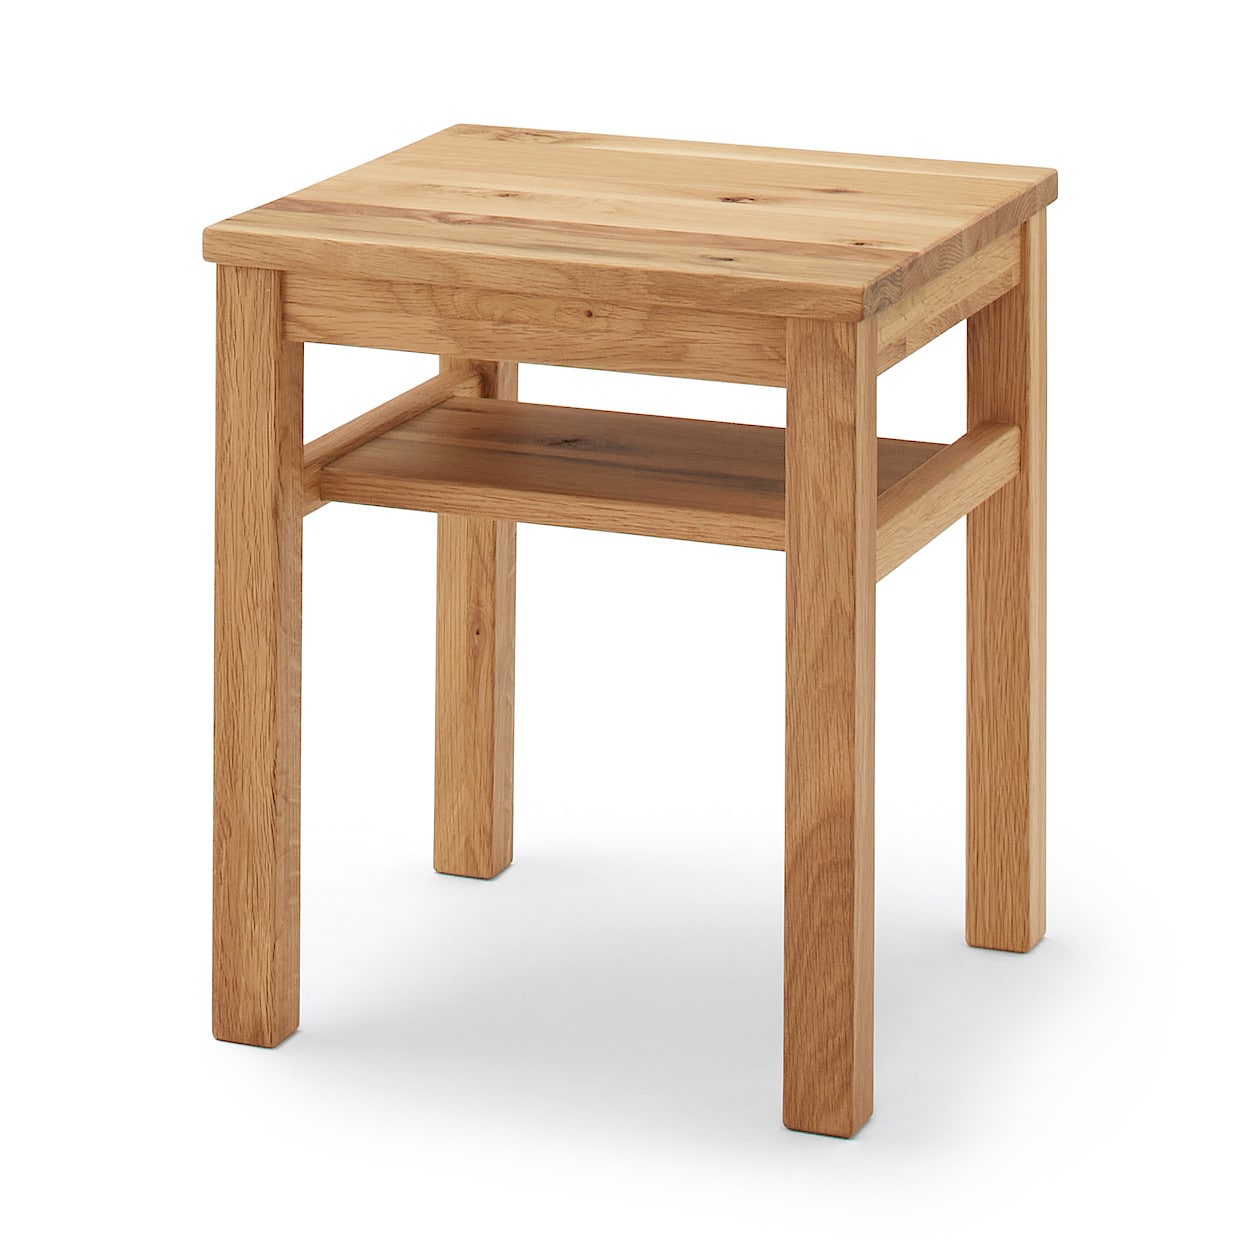 無印良品 サイドテーブル タモ材 ブラウン MUJI - テーブル